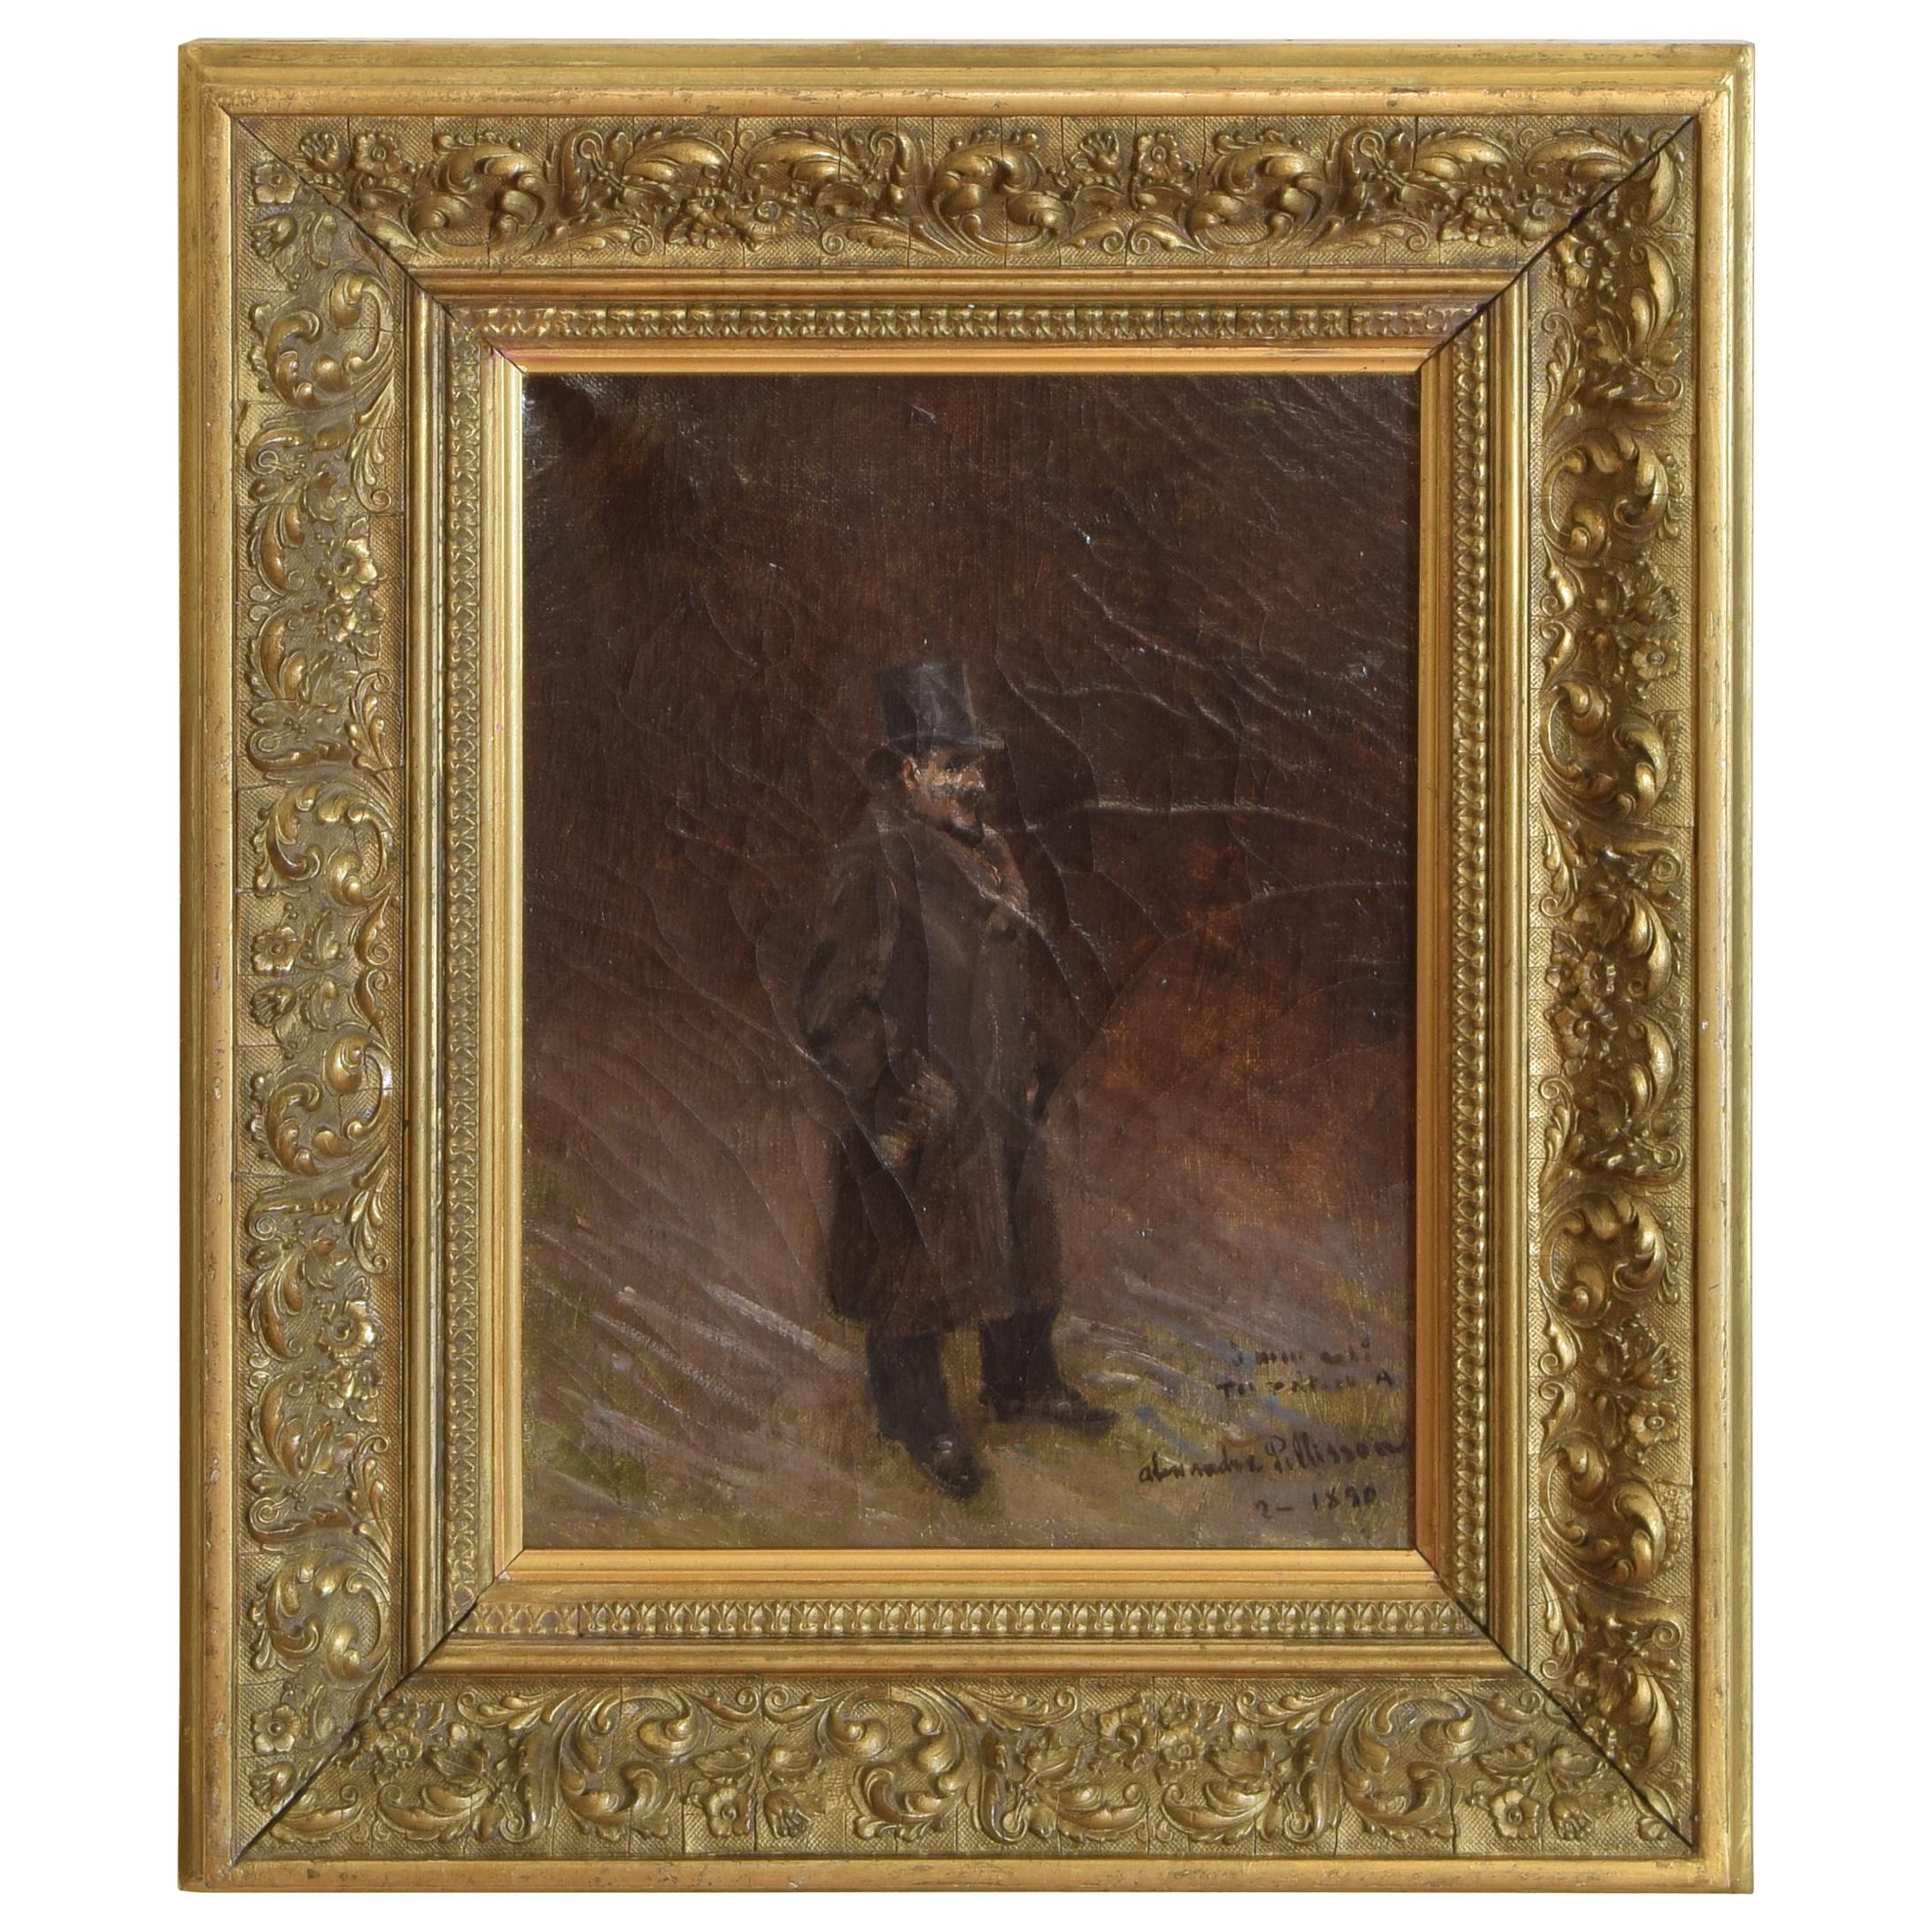 Huile sur toile de la fin du 19ème siècle représentant un gentleman de style élevé dans un cadre en bois doré